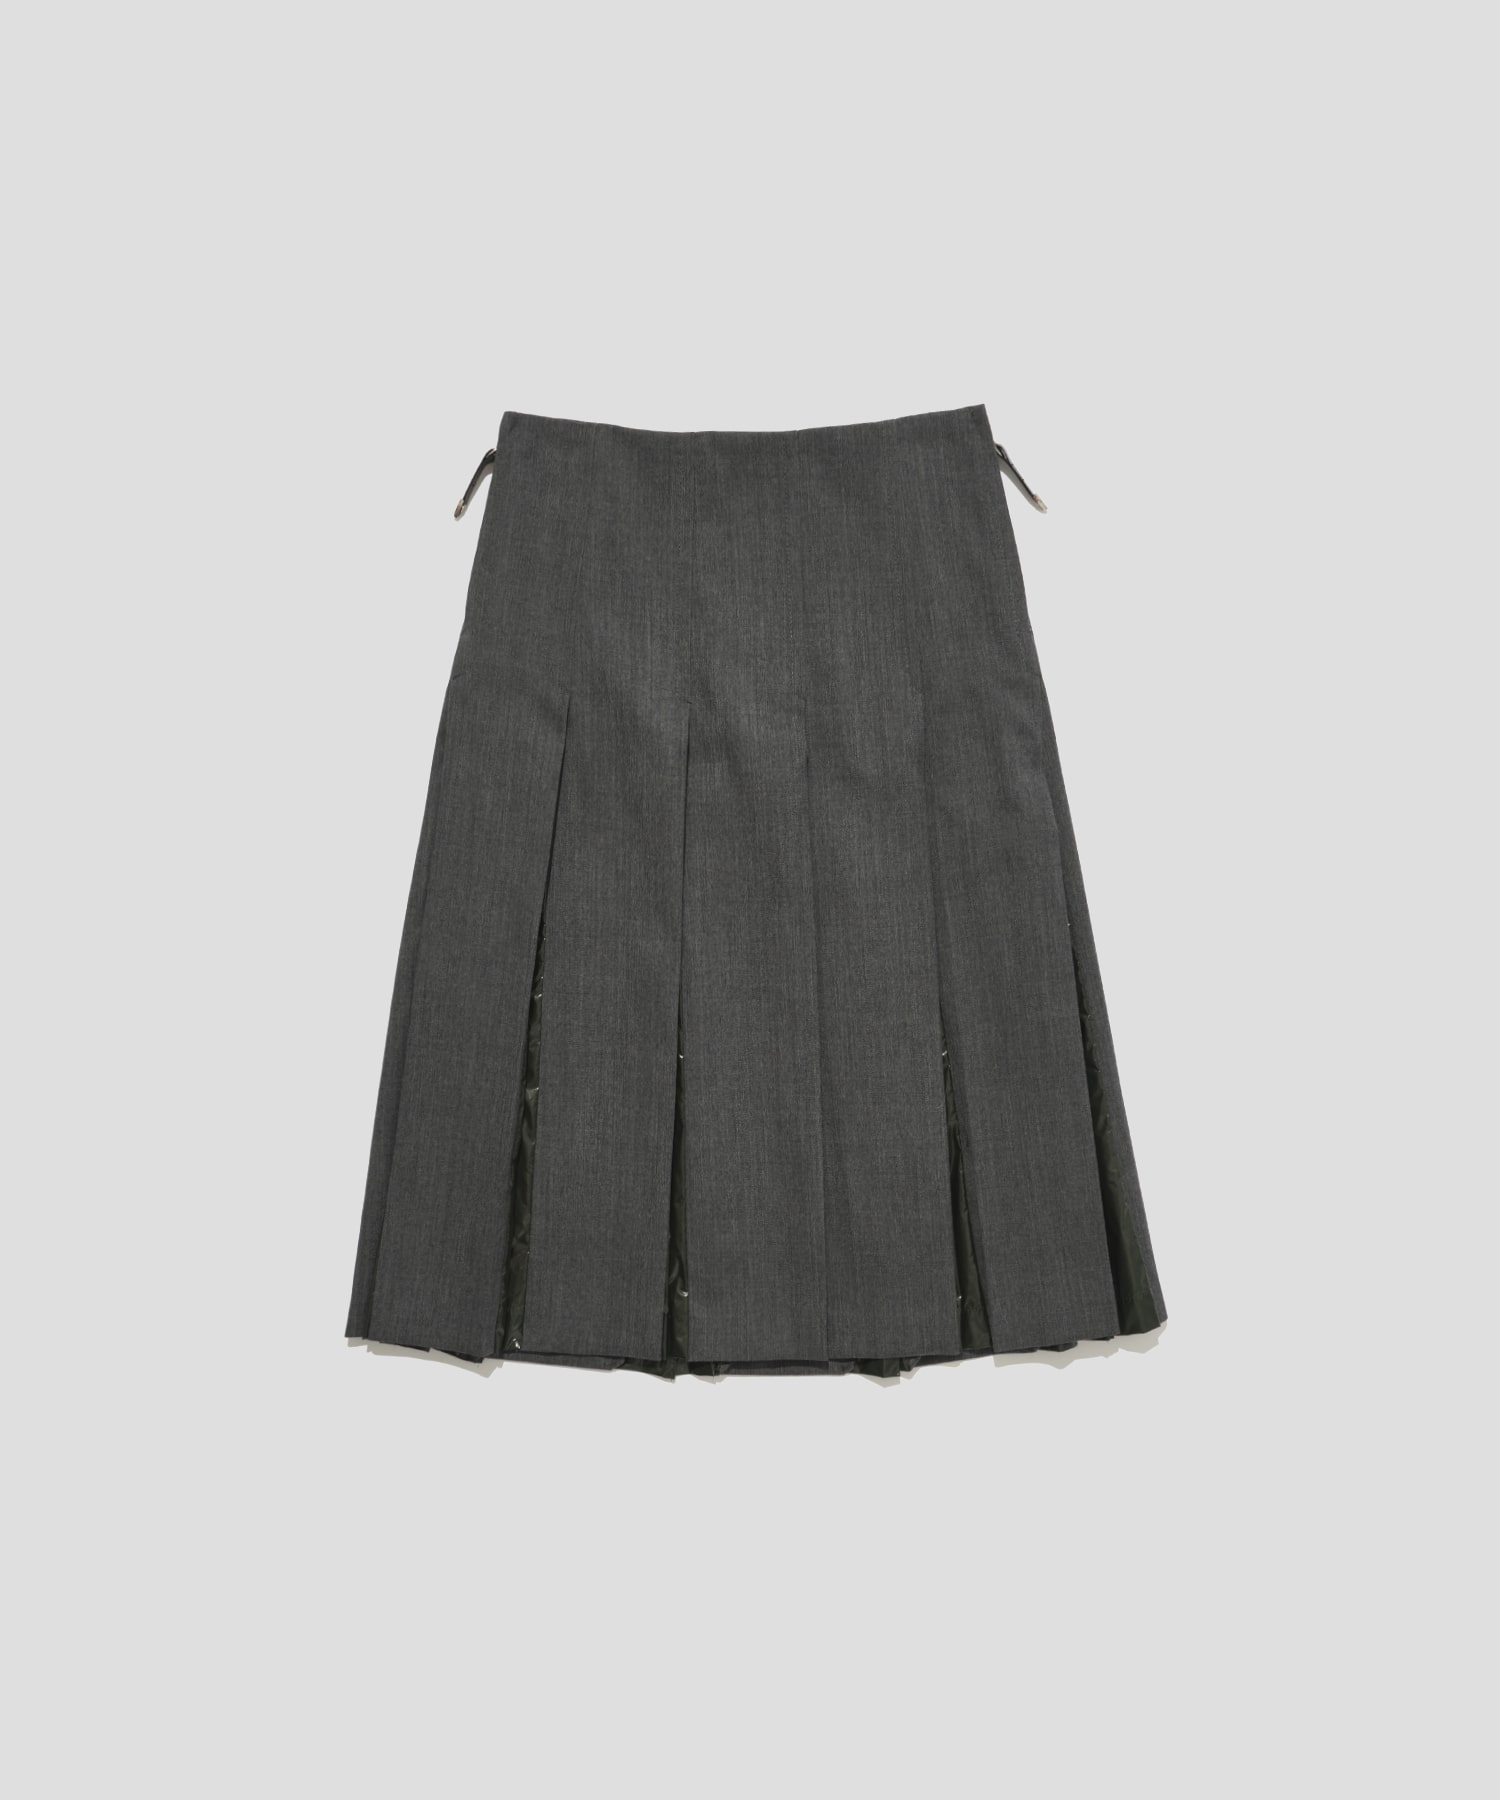 Wool twill skirt